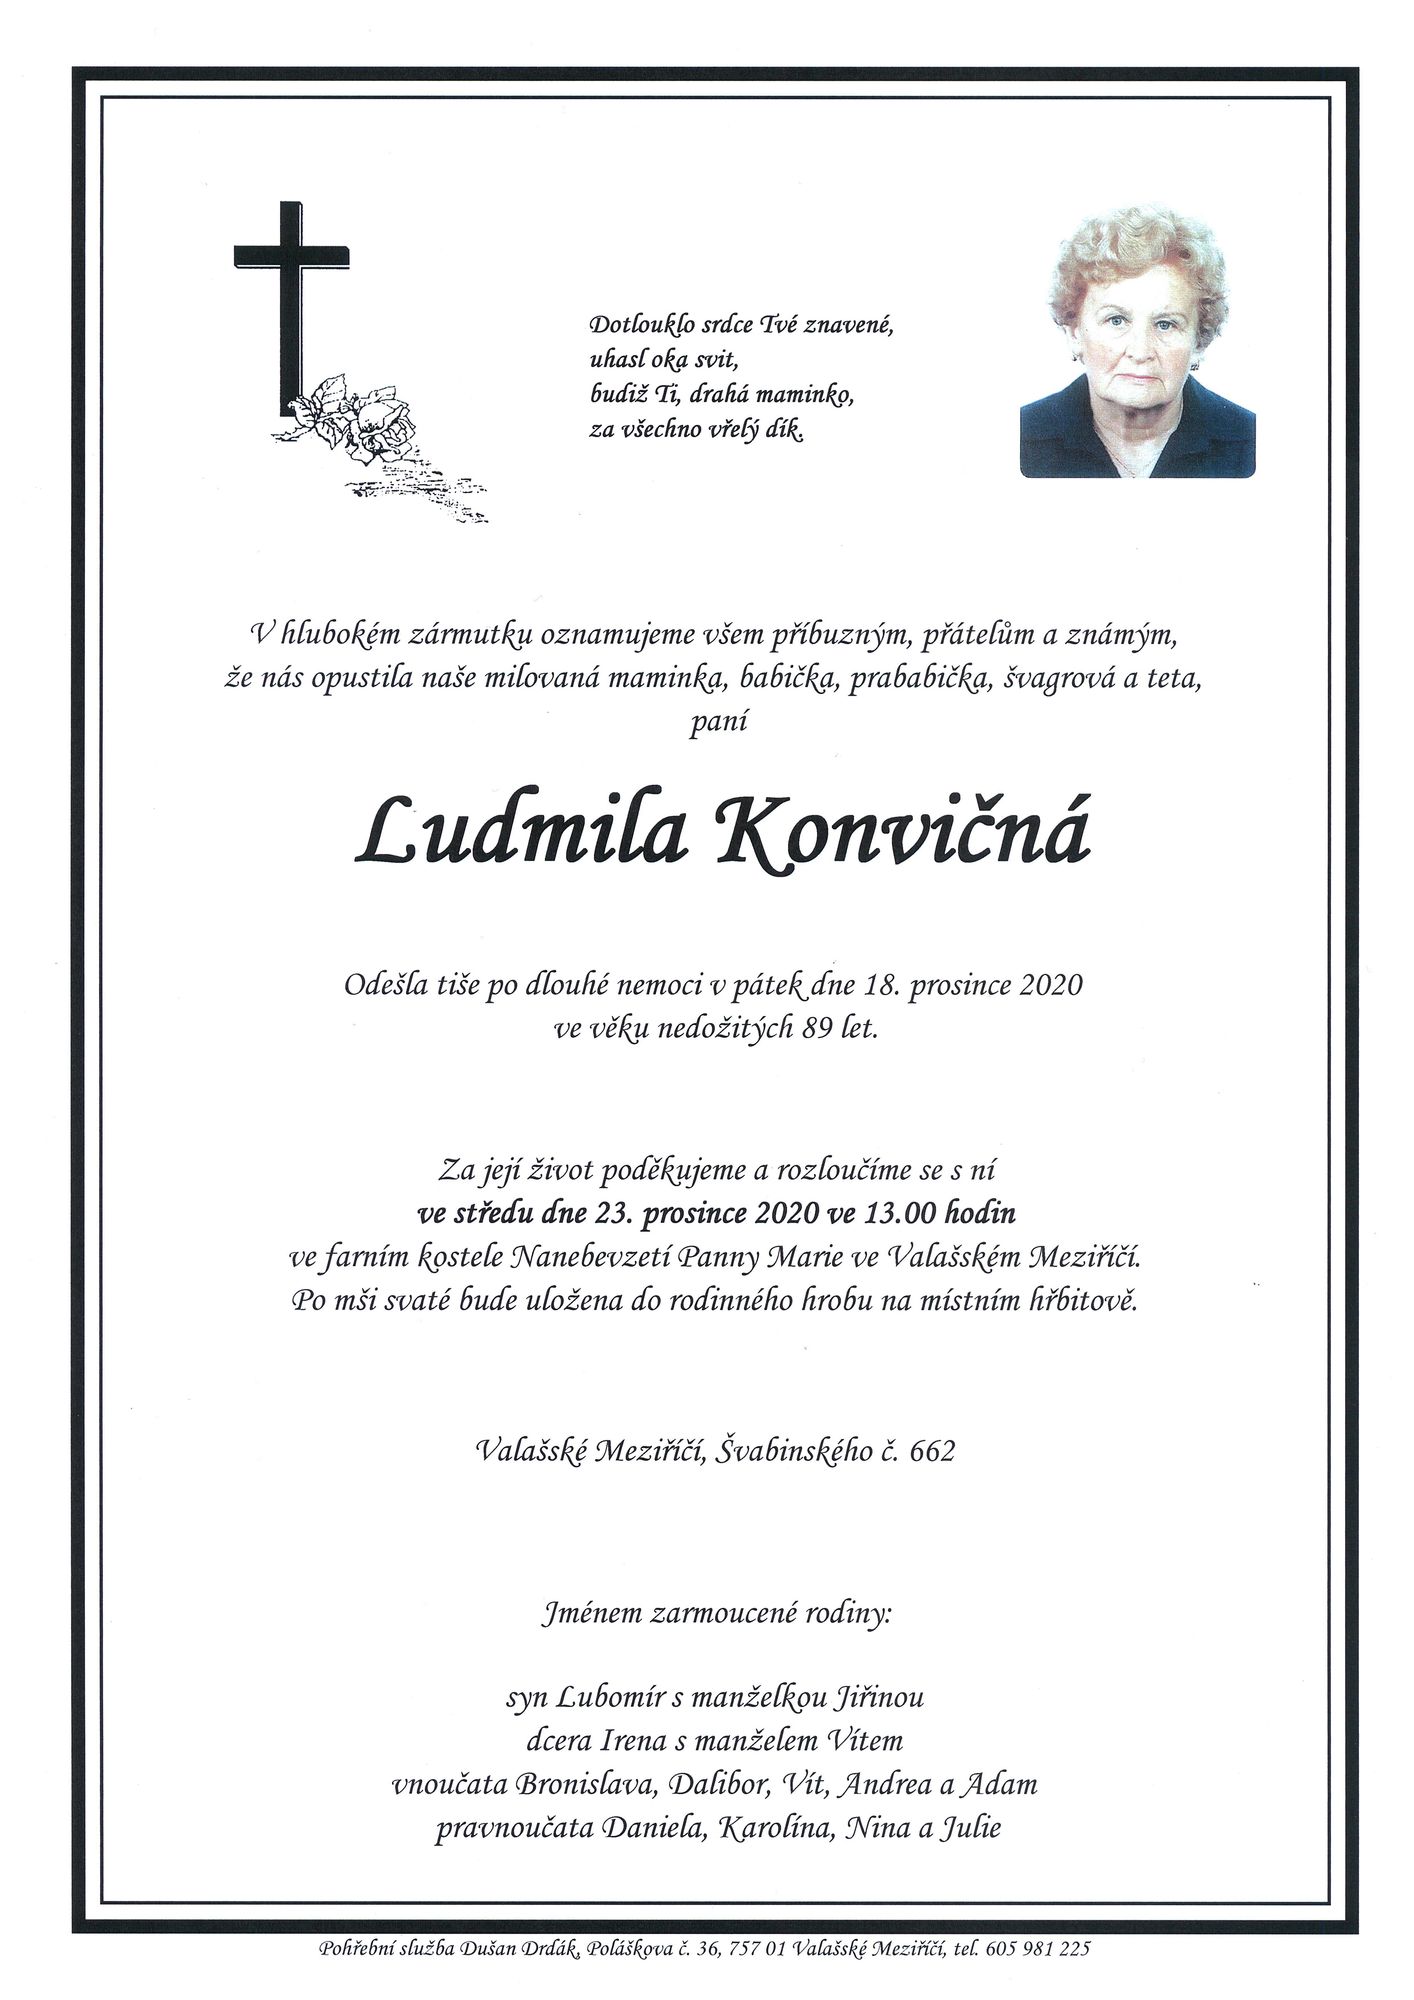 Ludmila Konvičná